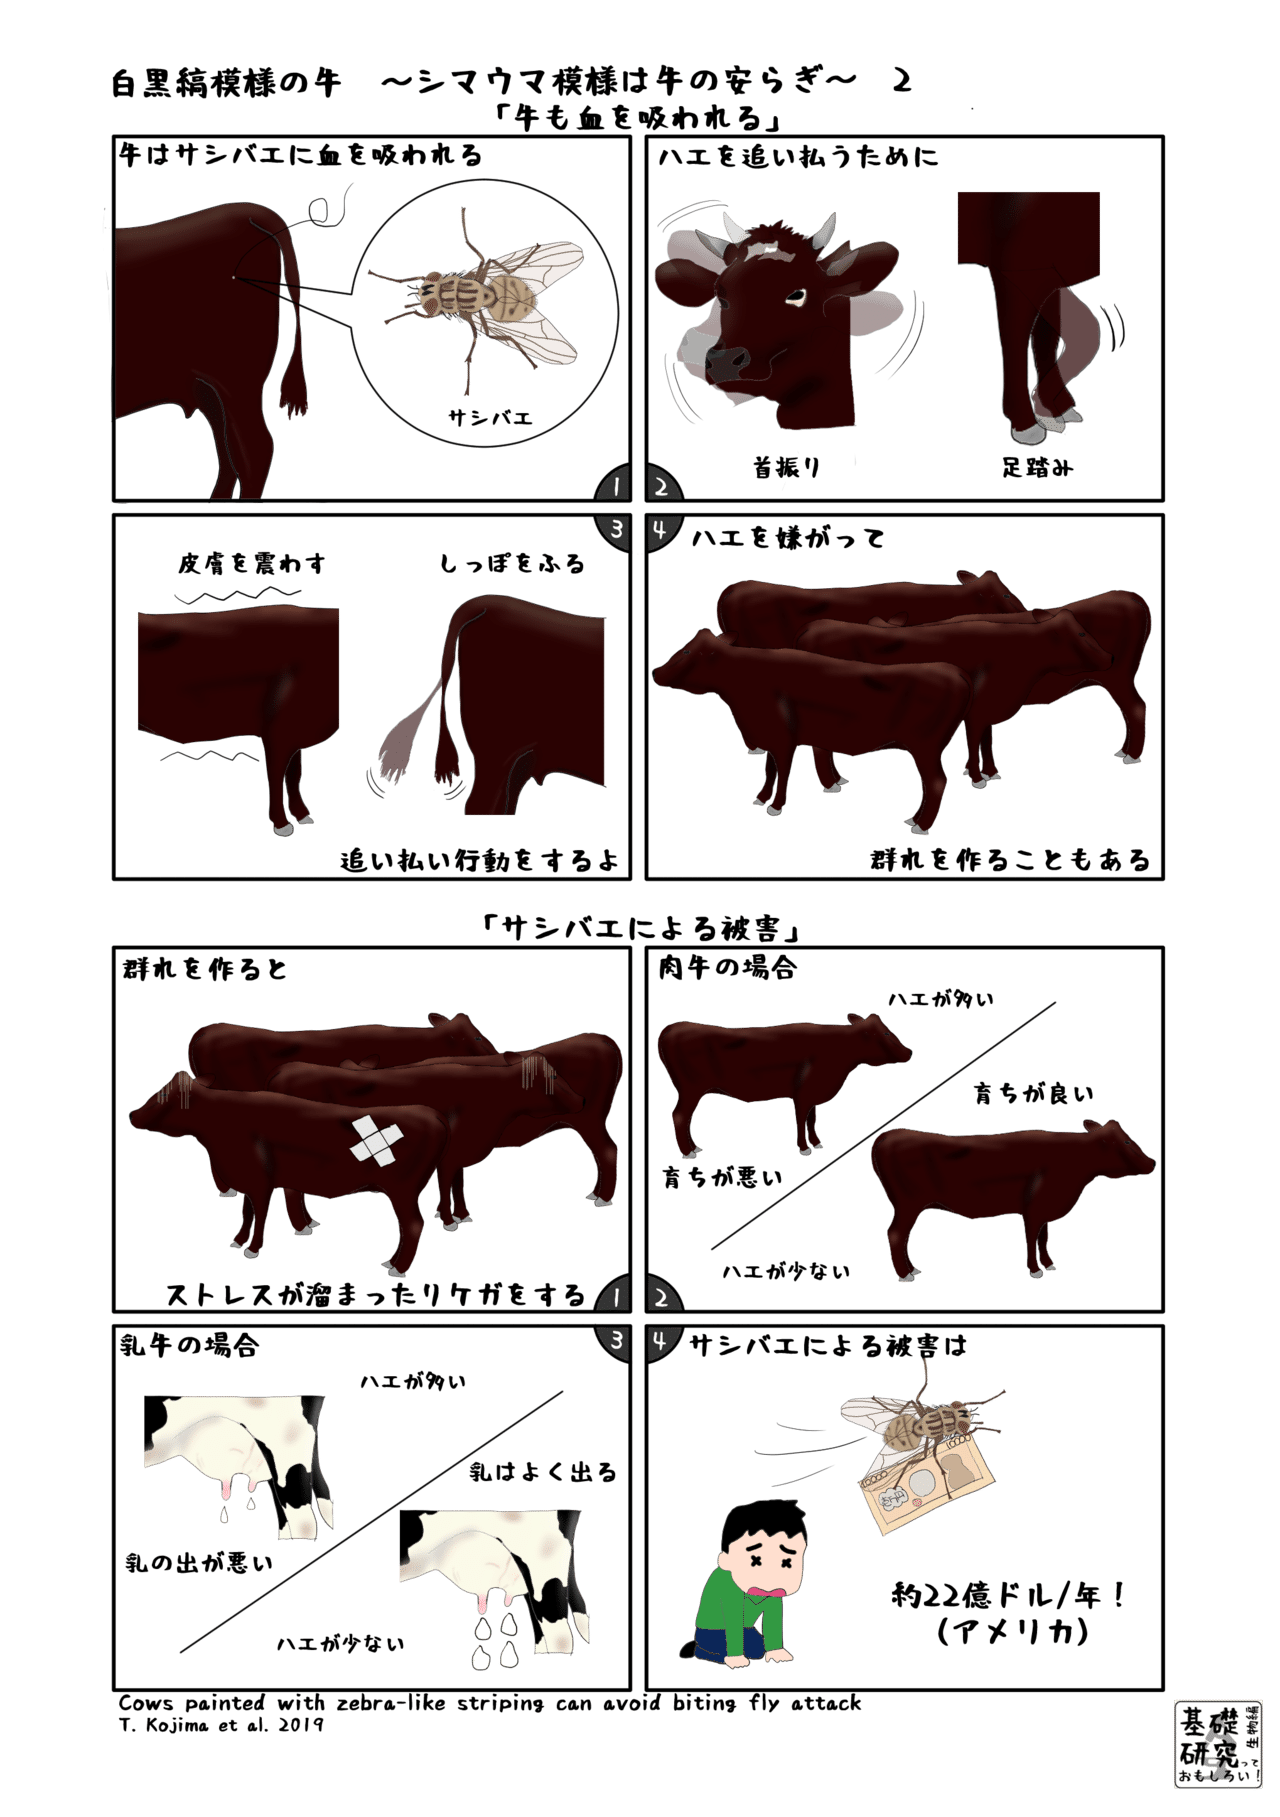 白黒縞模様の牛 シマウマ模様は牛の安らぎ 2 かわいせーざん 基礎研究っておもしろい 生物編 Note